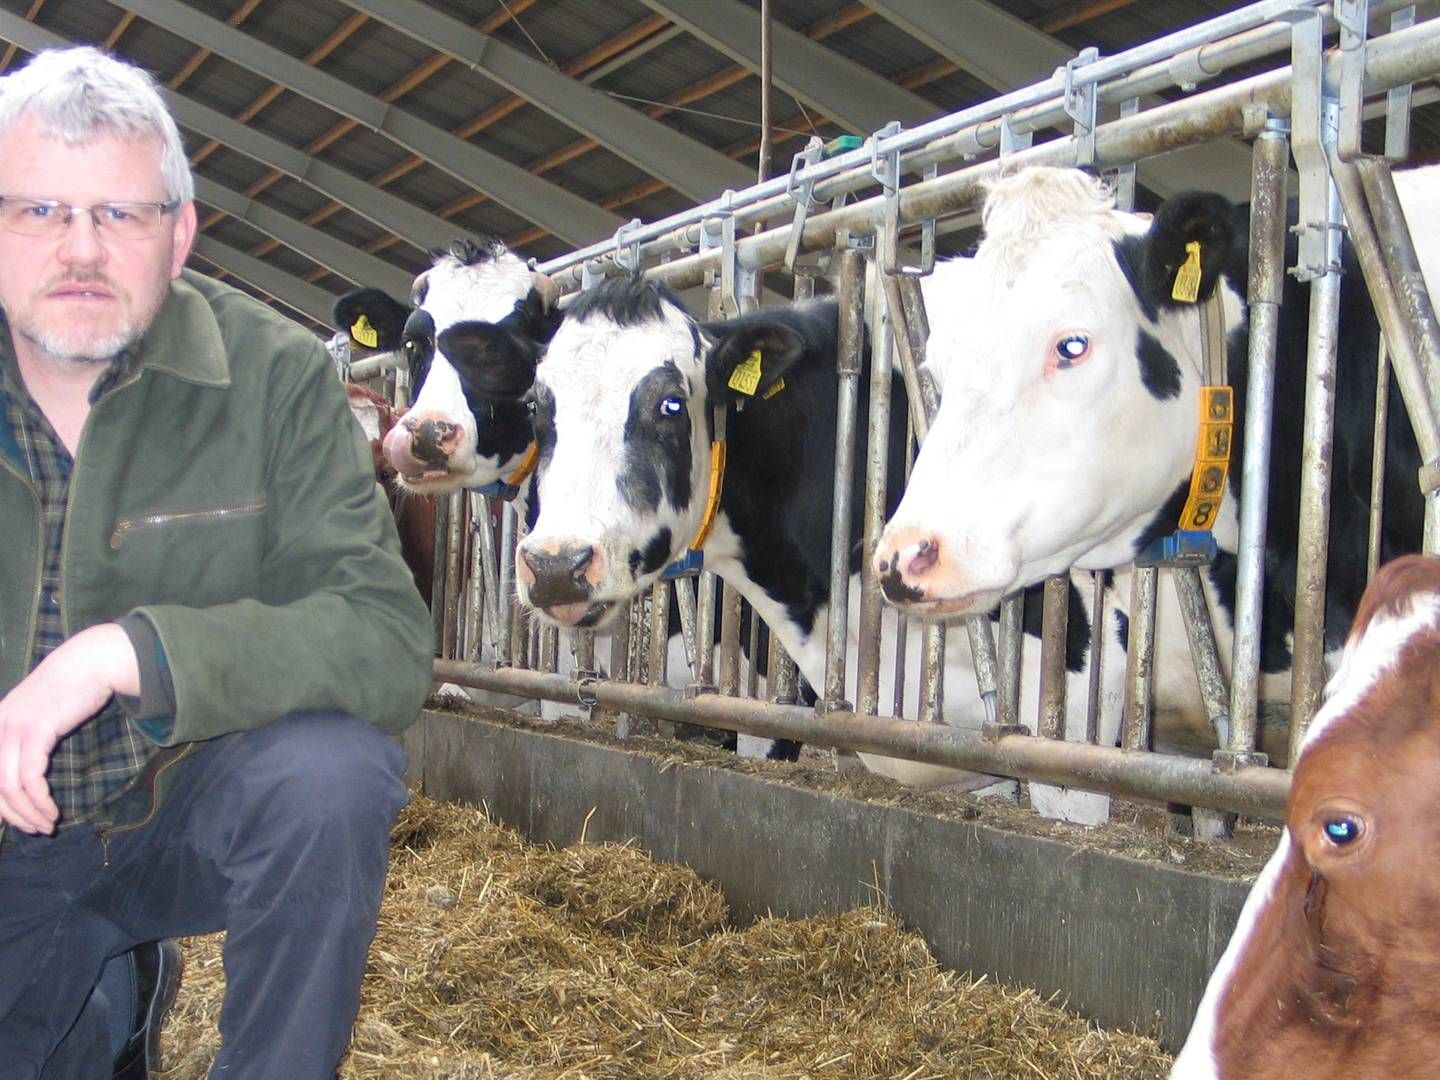 Landmænd vil fortsat være lammet i kampen om mask, fordi biogasselskaberne kan overbyde prisen, mener formand for Danske Mælkeproducenter. | Foto: LDM / PR